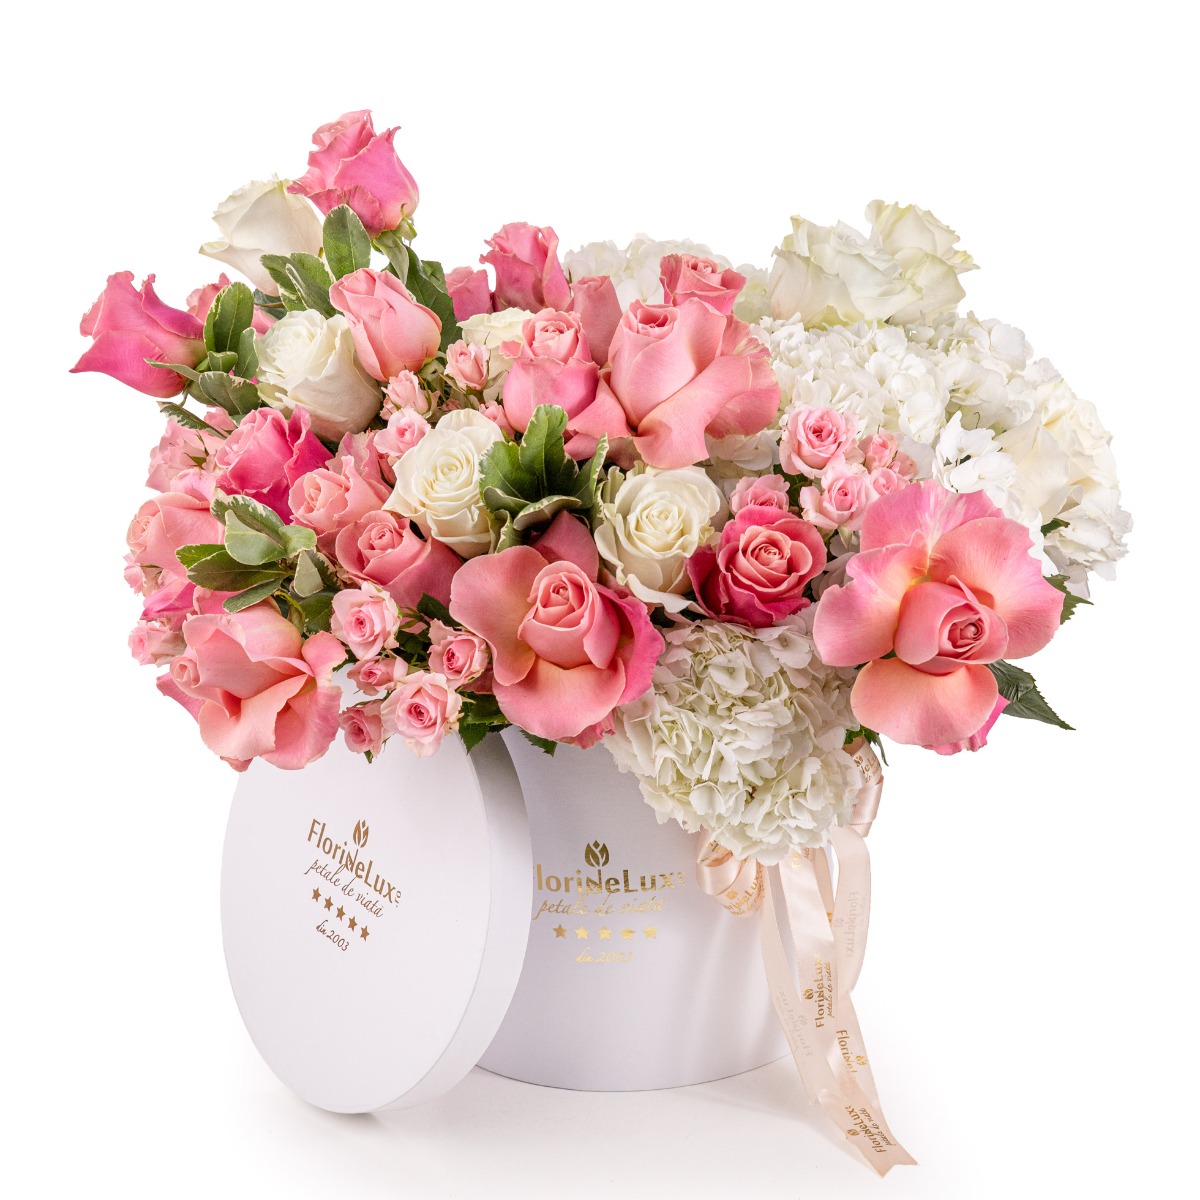 aranjament floral trandafiri roz in cutie eleganta